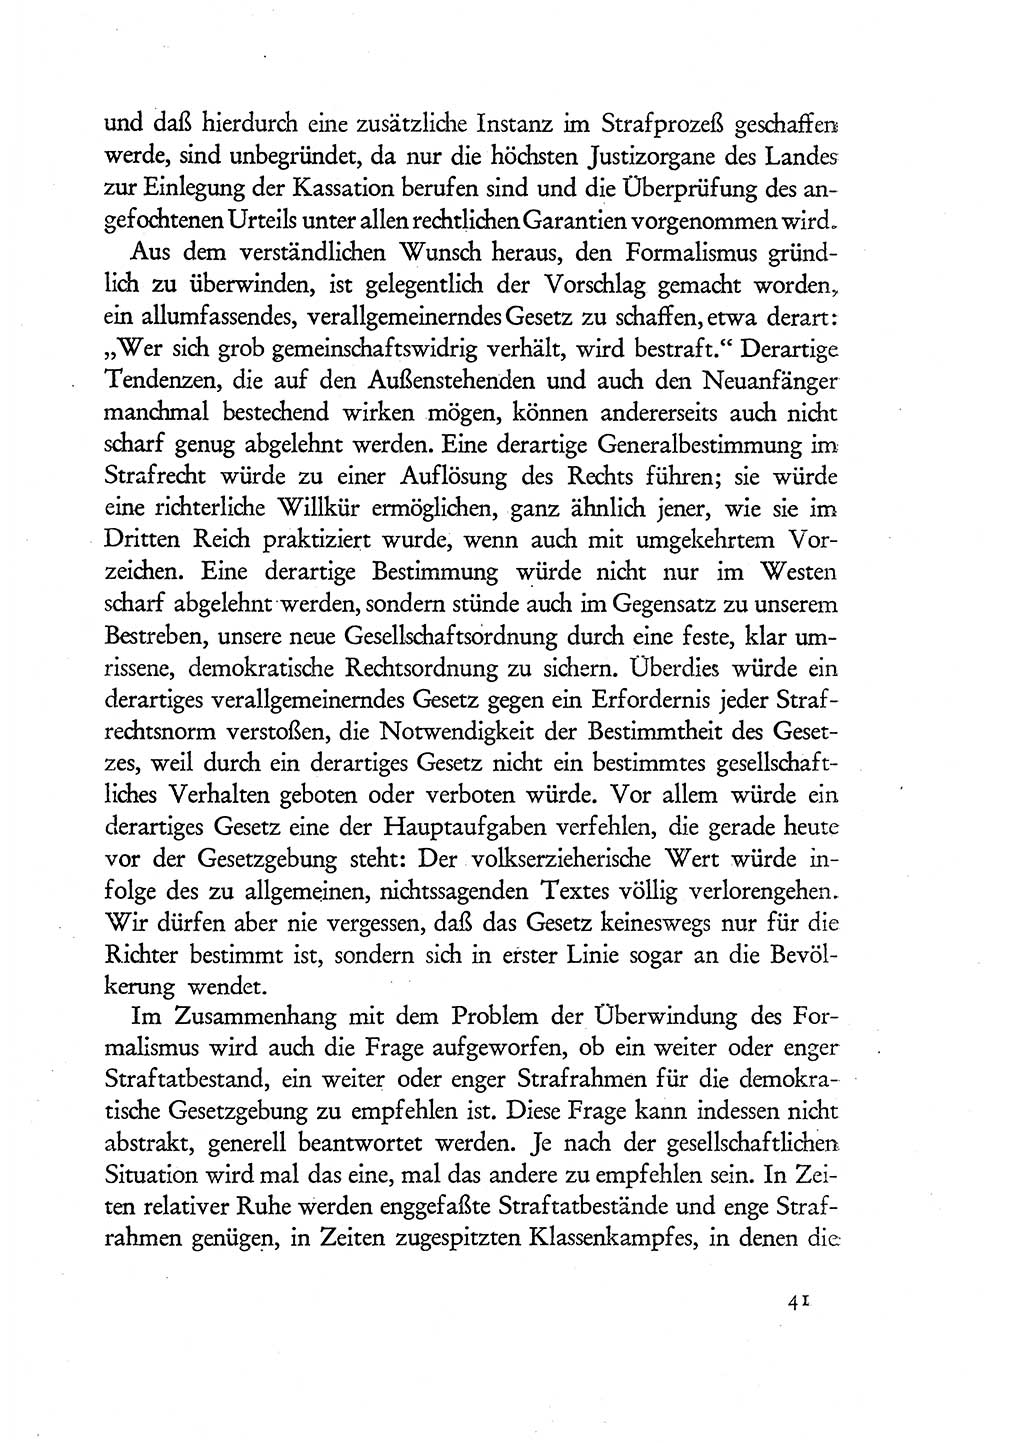 Probleme eines demokratischen Strafrechts [Sowjetische Besatzungszone (SBZ) Deutschlands] 1949, Seite 41 (Probl. Strafr. SBZ Dtl. 1949, S. 41)